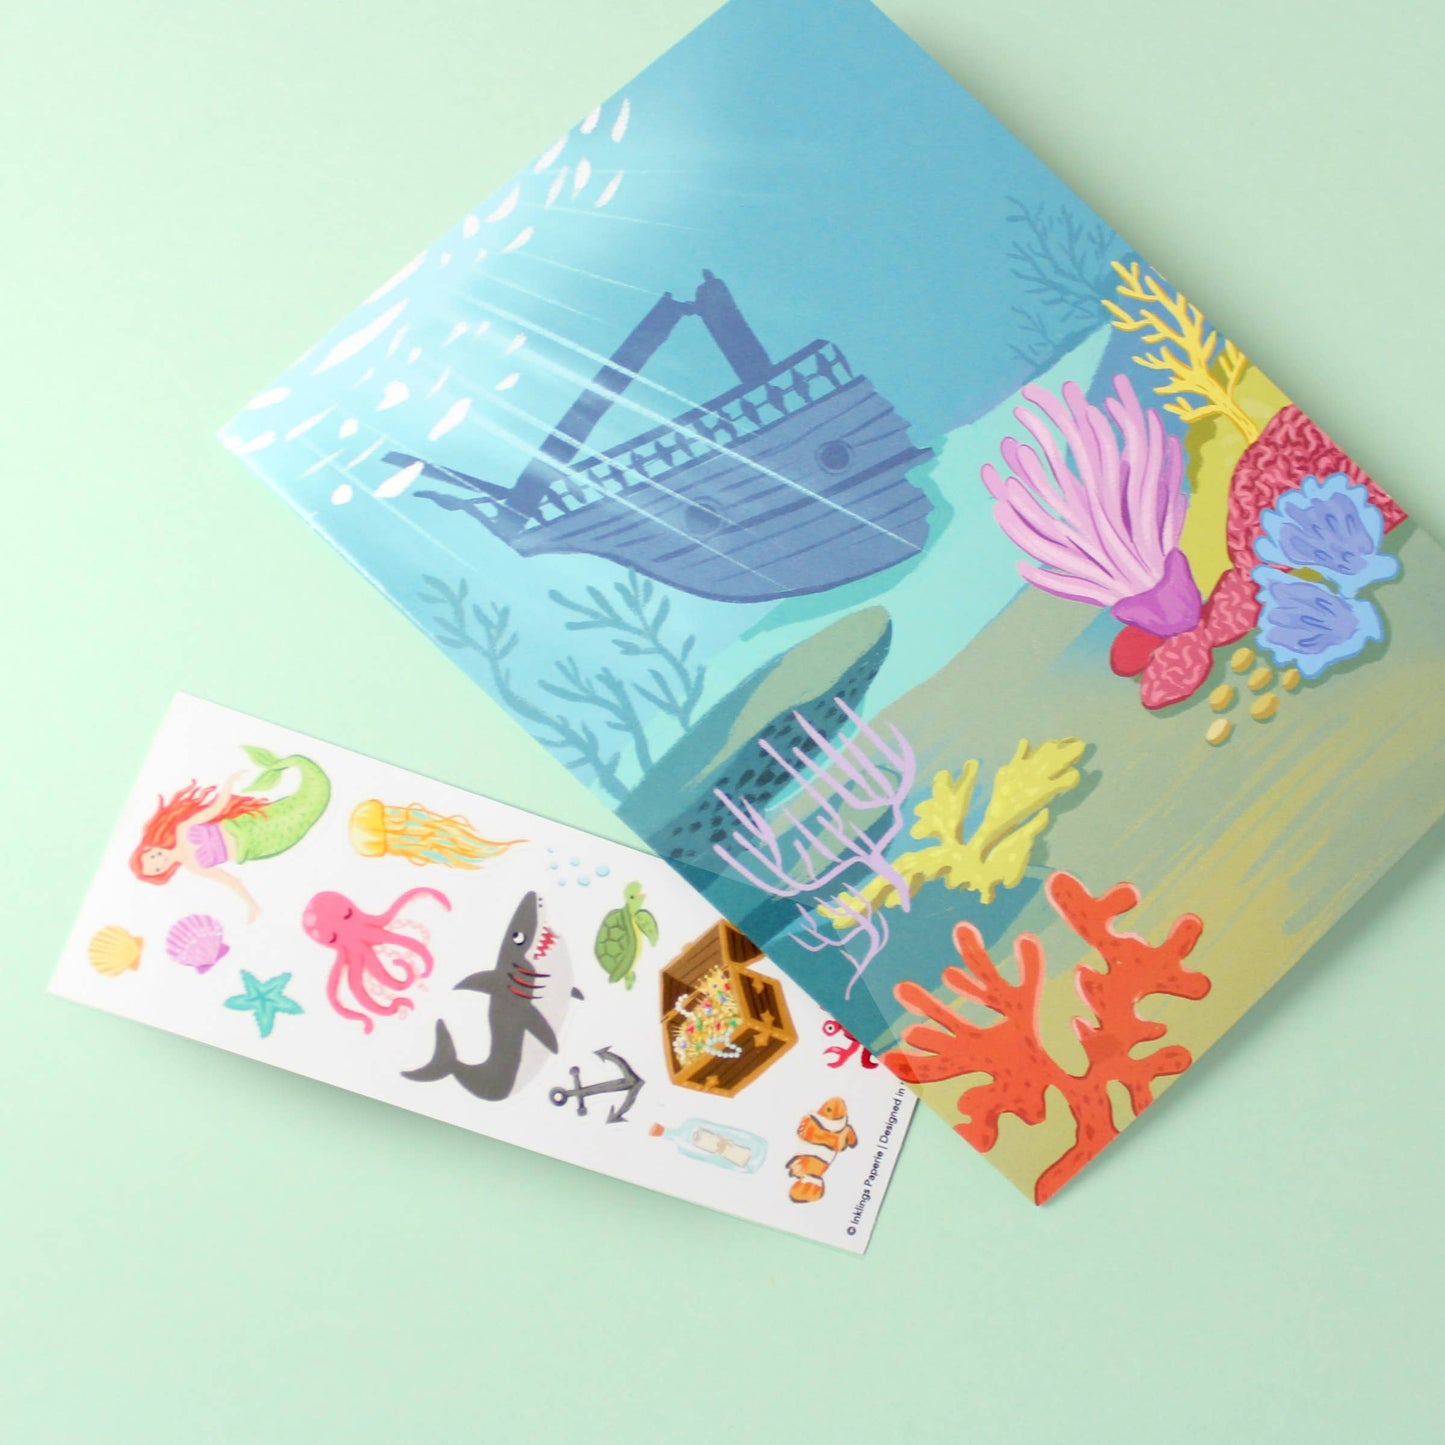 Sticker Scene Card; Under the Sea